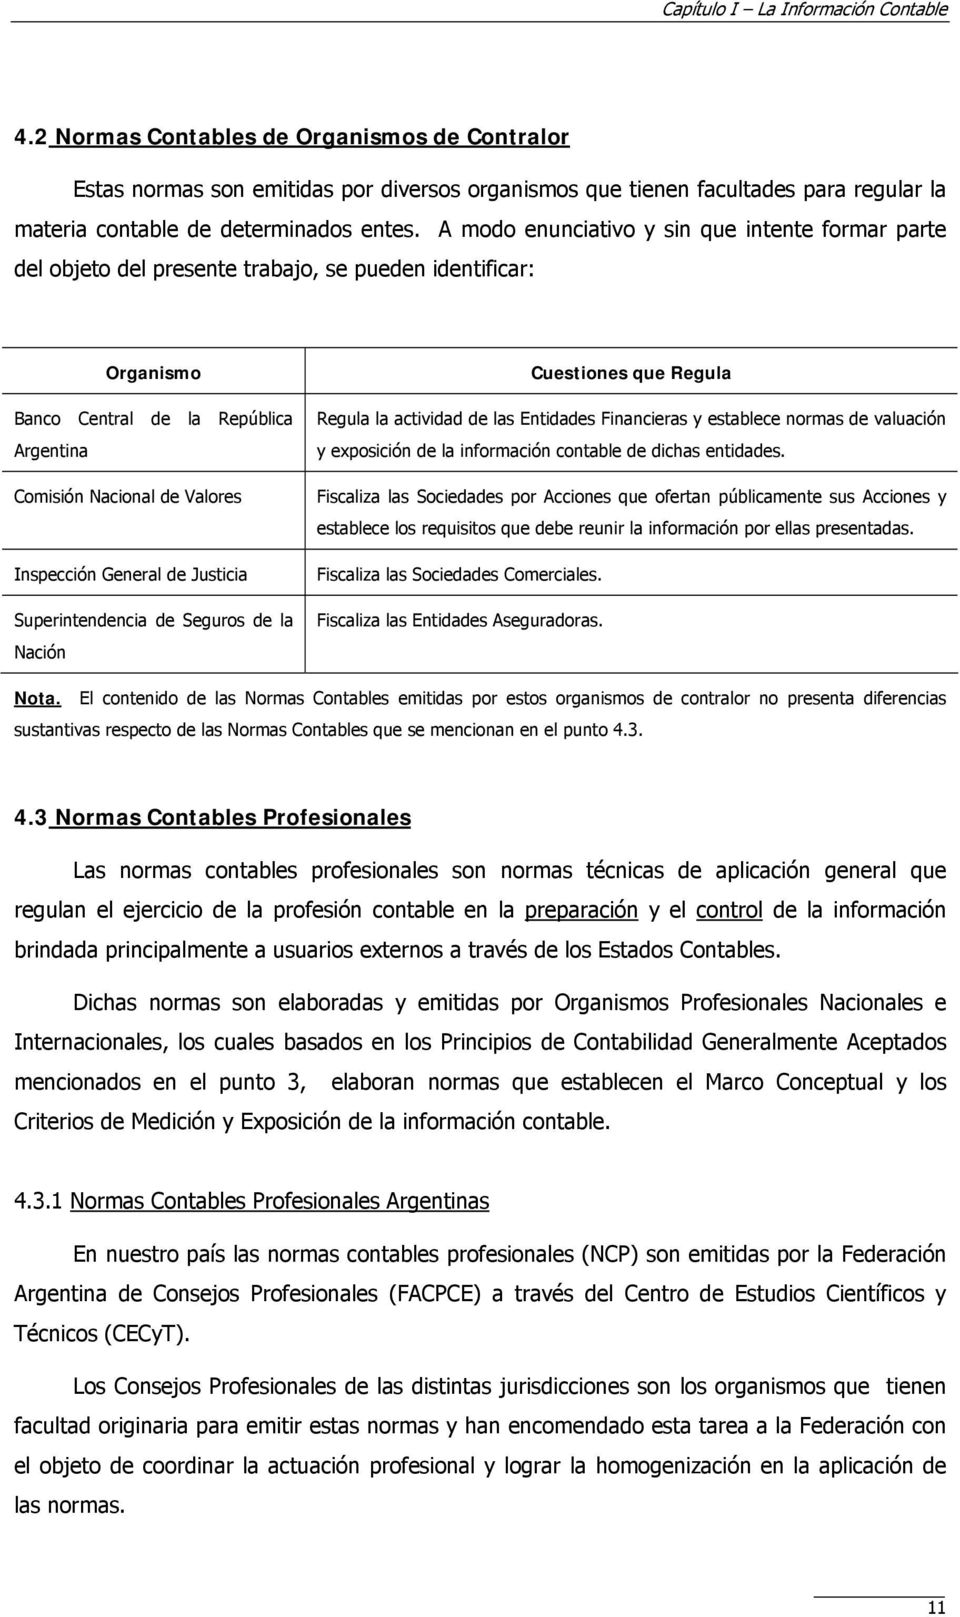 A modo enunciativo y sin que intente formar parte del objeto del presente trabajo, se pueden identificar: Organismo Banco Central de la República Argentina Comisión Nacional de Valores Inspección